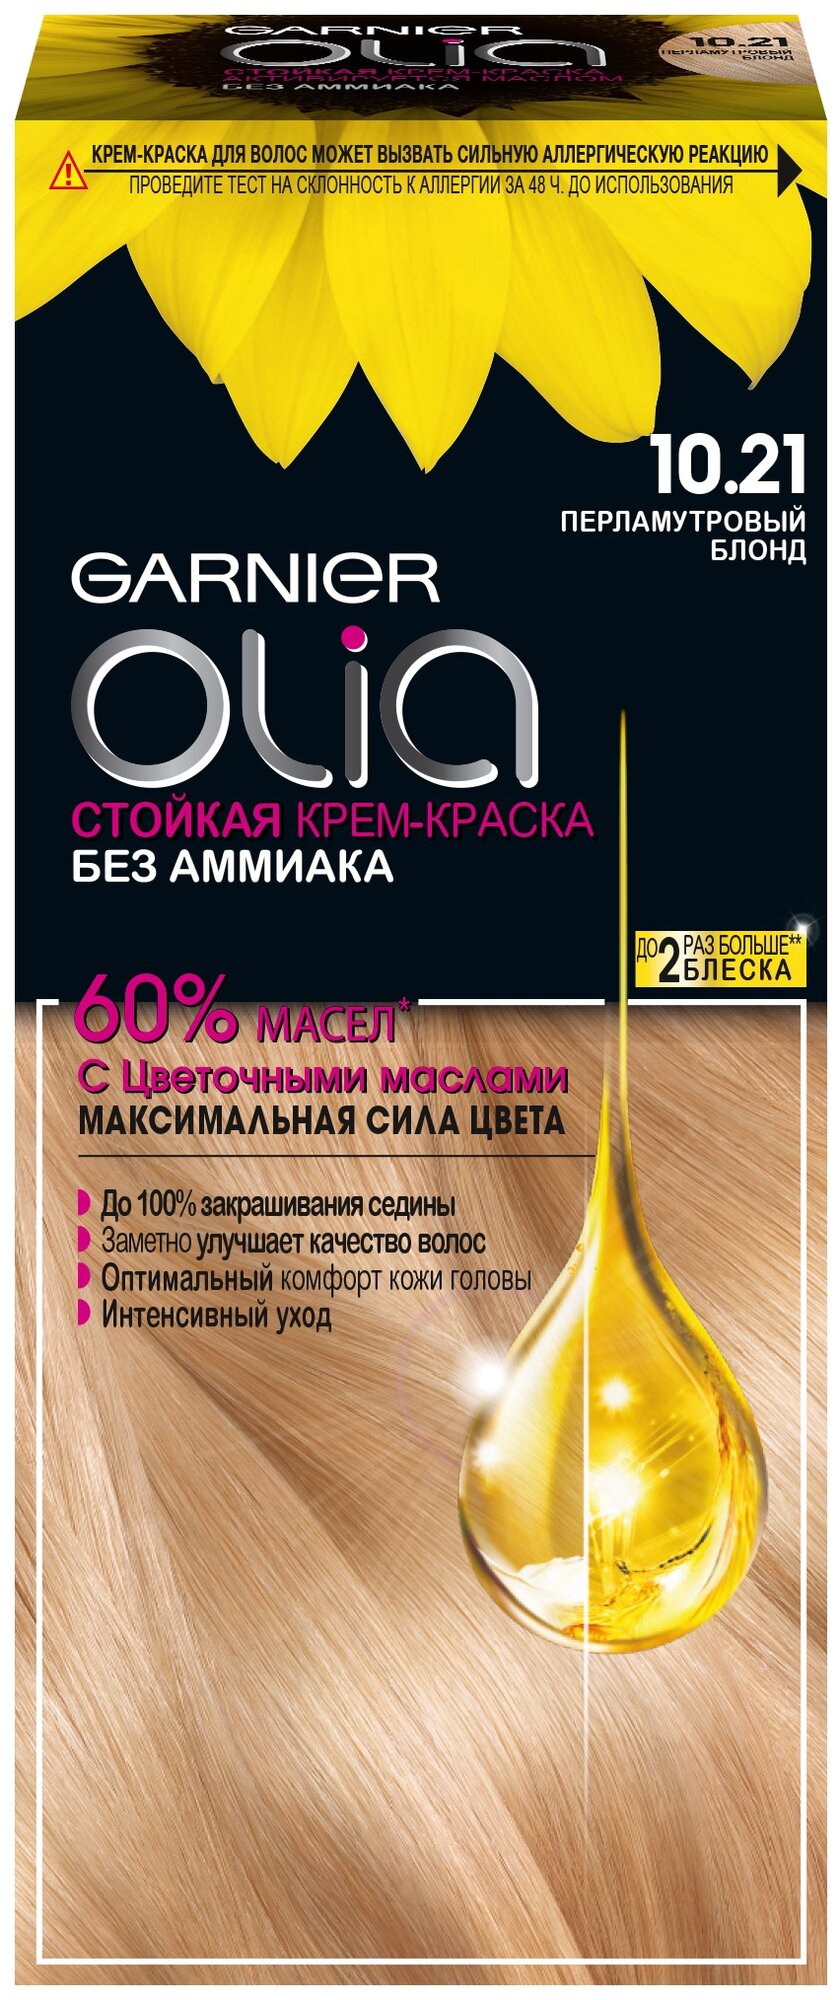 GARNIER Olia стойкая крем-краска для волос, 10.21 Перламутровый блонд, 115 мл